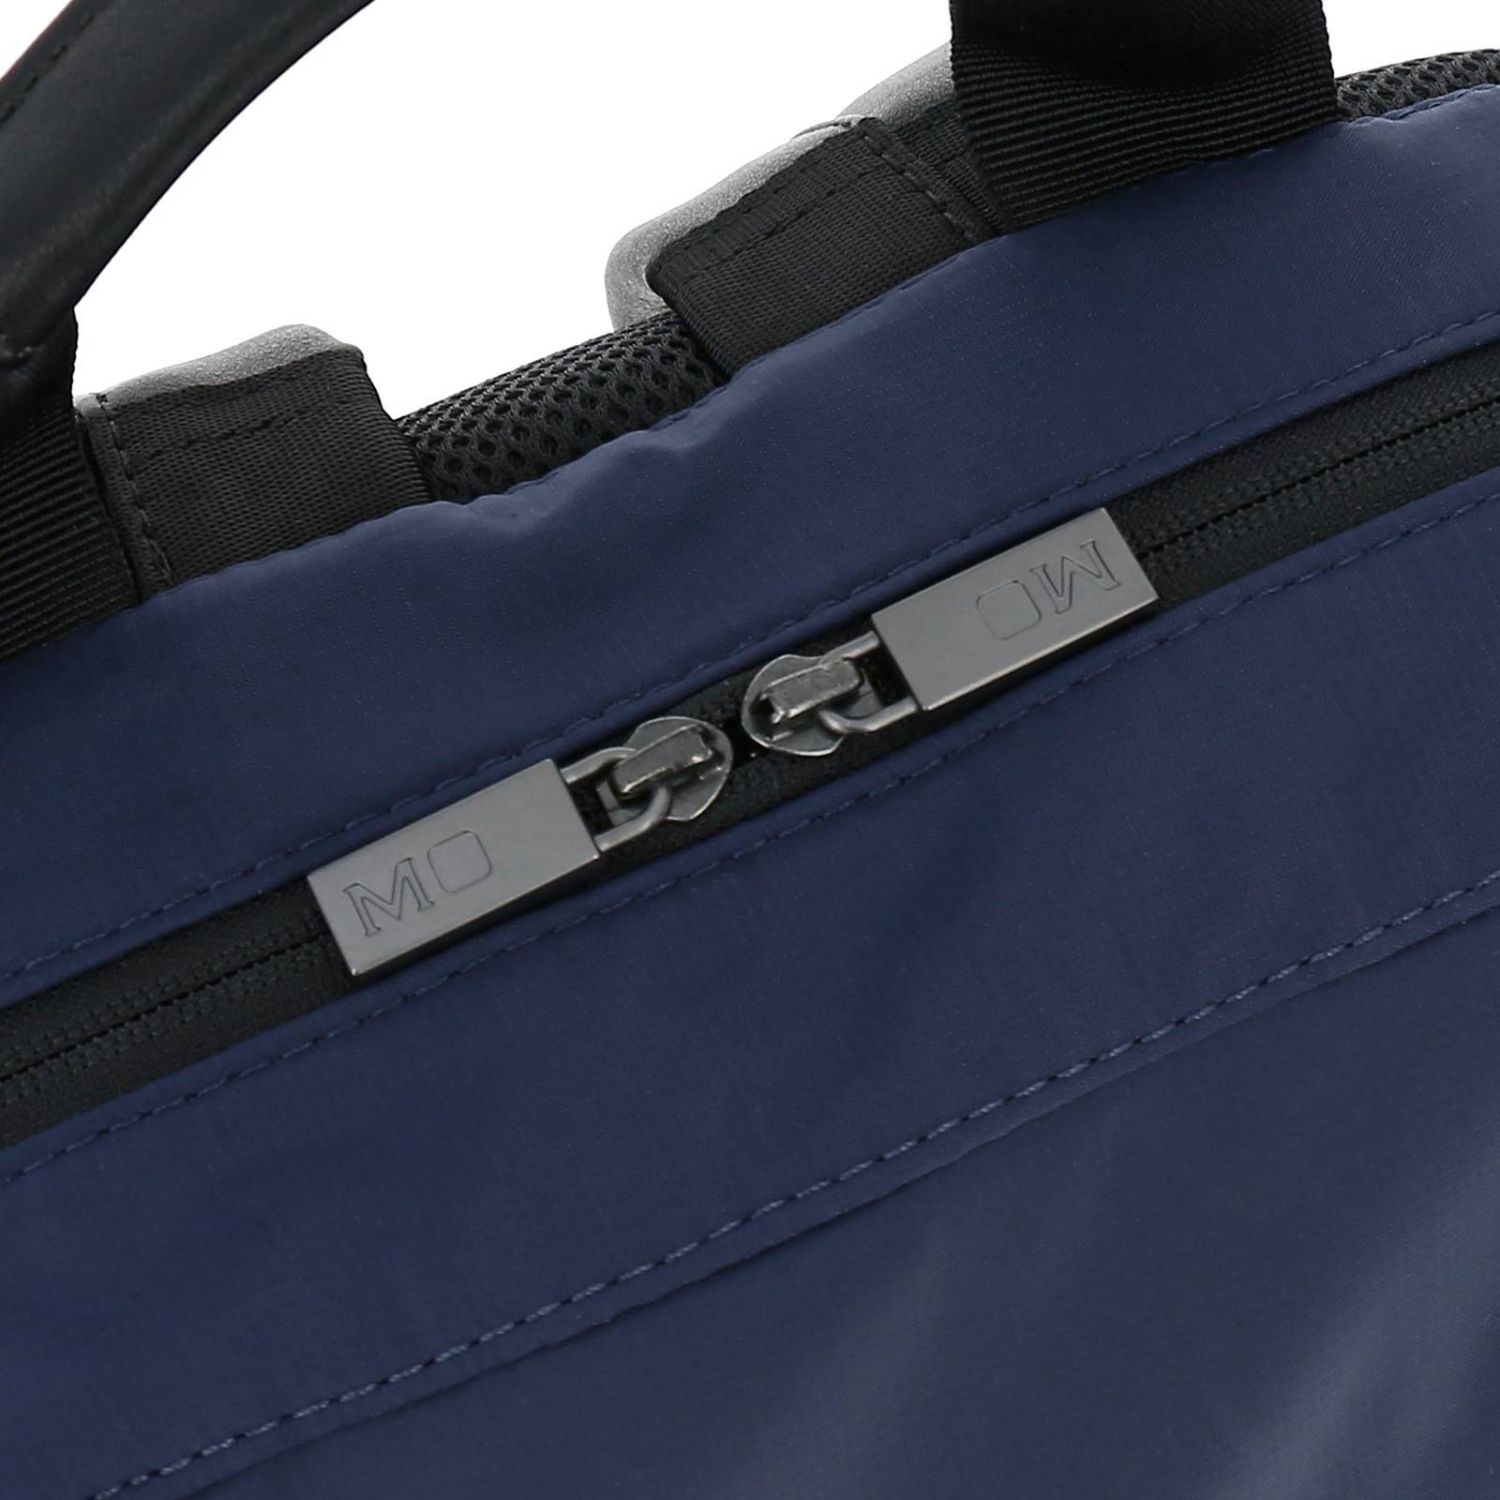 Moleskine Outlet: Backpack men - Blue | Backpack Moleskine 805 ...